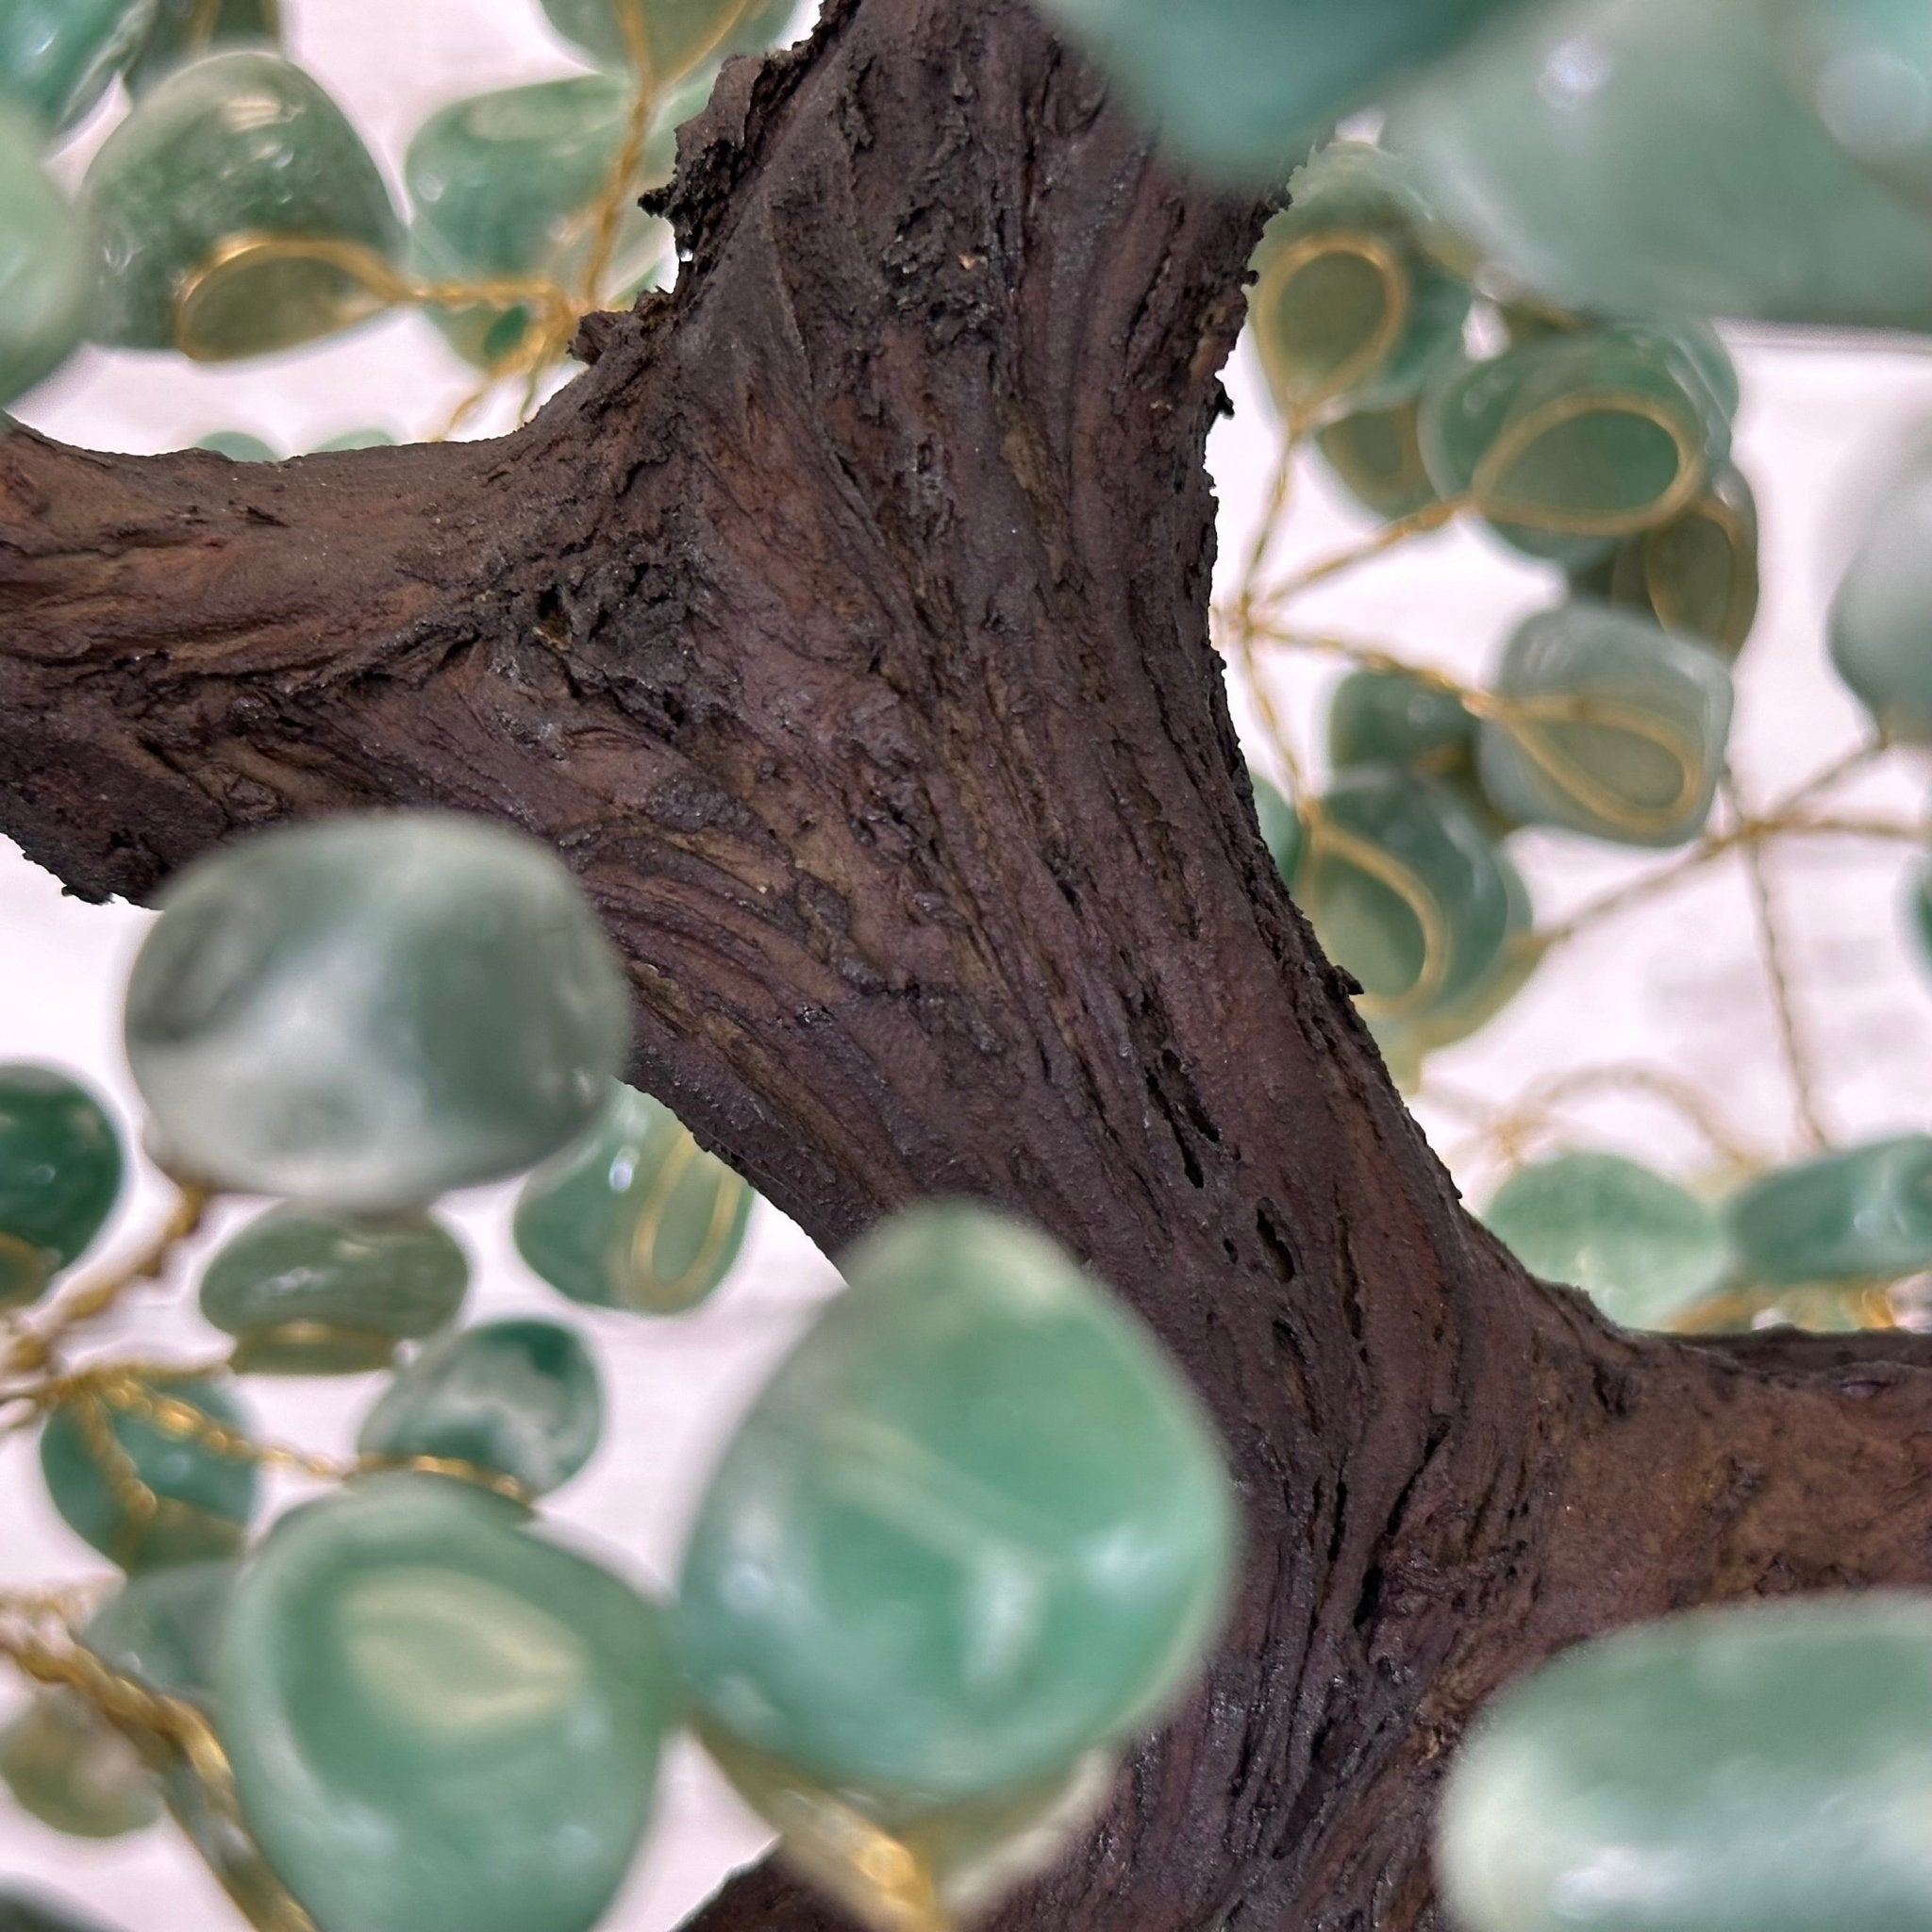 22" Tall Green Quartz Gemstone Tree w/ Amethyst base, 540 gems #5406GQ-016 - Brazil GemsBrazil Gems22" Tall Green Quartz Gemstone Tree w/ Amethyst base, 540 gems #5406GQ-016Gemstone Trees5406GQ-016